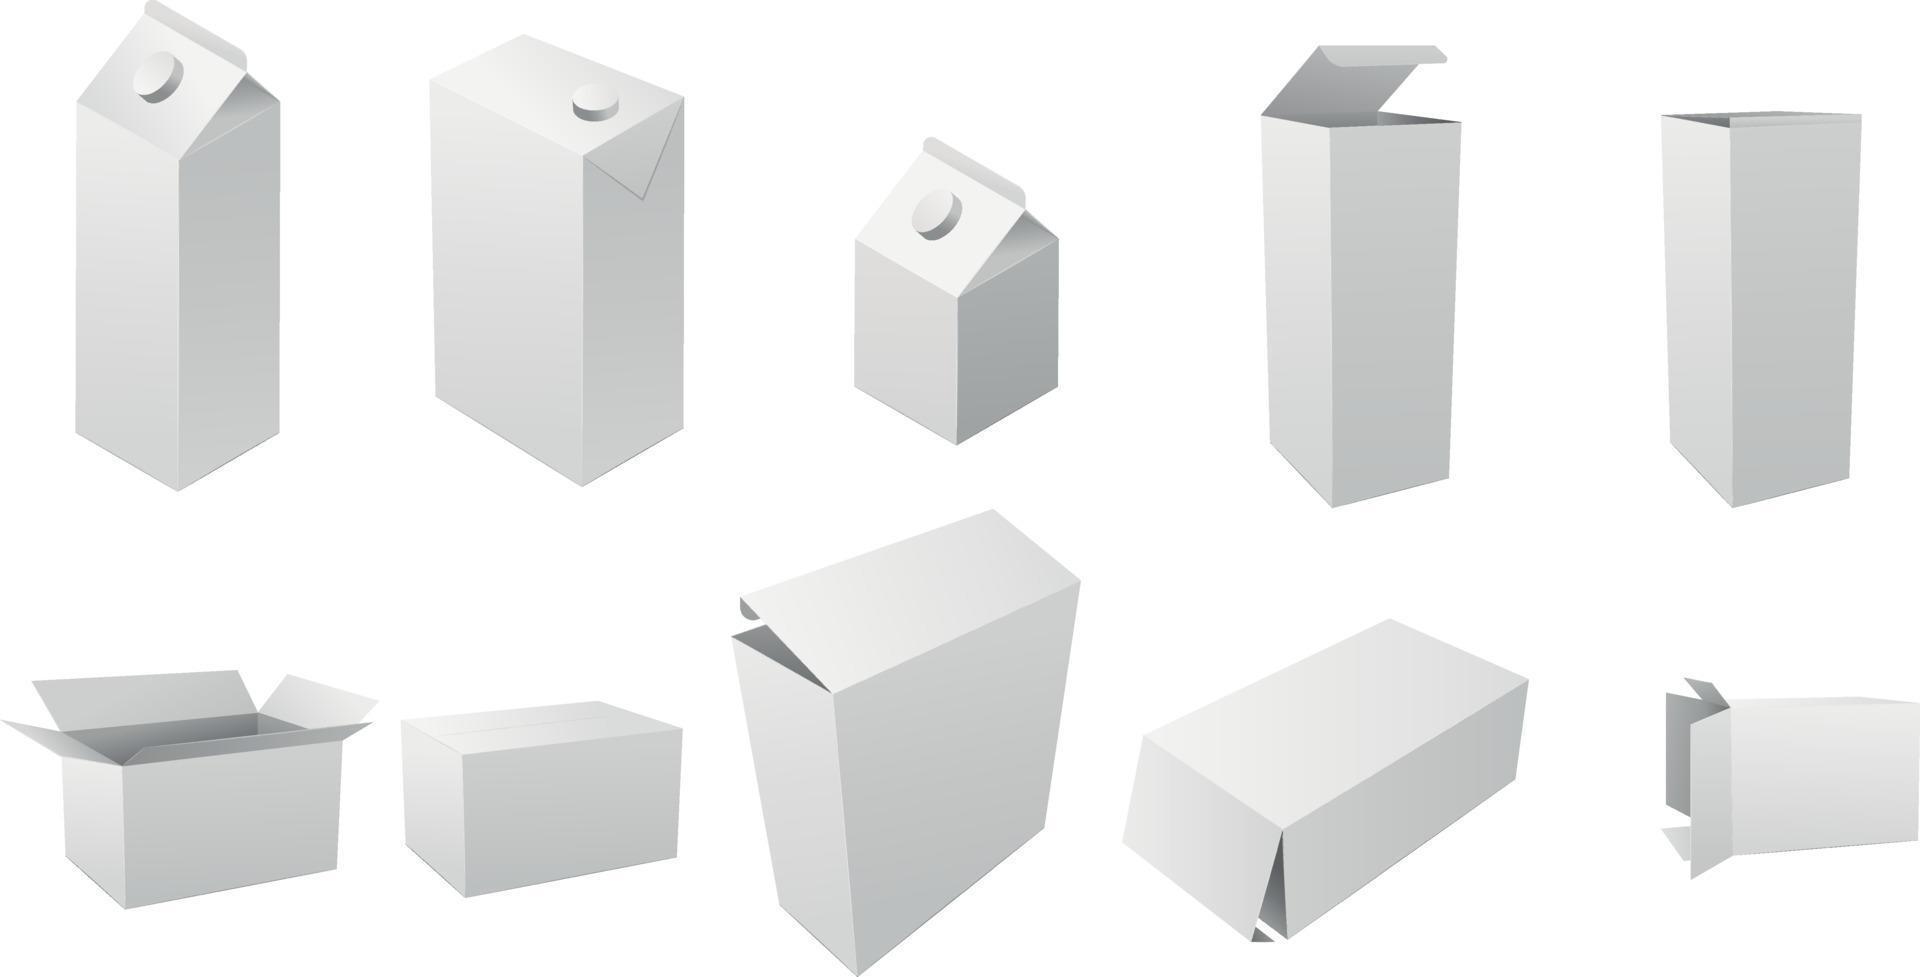 uppsättning av realistiska vertikala hög kartong rektangulära kosmetiska eller medicinska förpackningar, papperslådor. mjölk- och juicelådor. realistisk mockup av en hög vit kartong, 3d tomma mallar. vektor